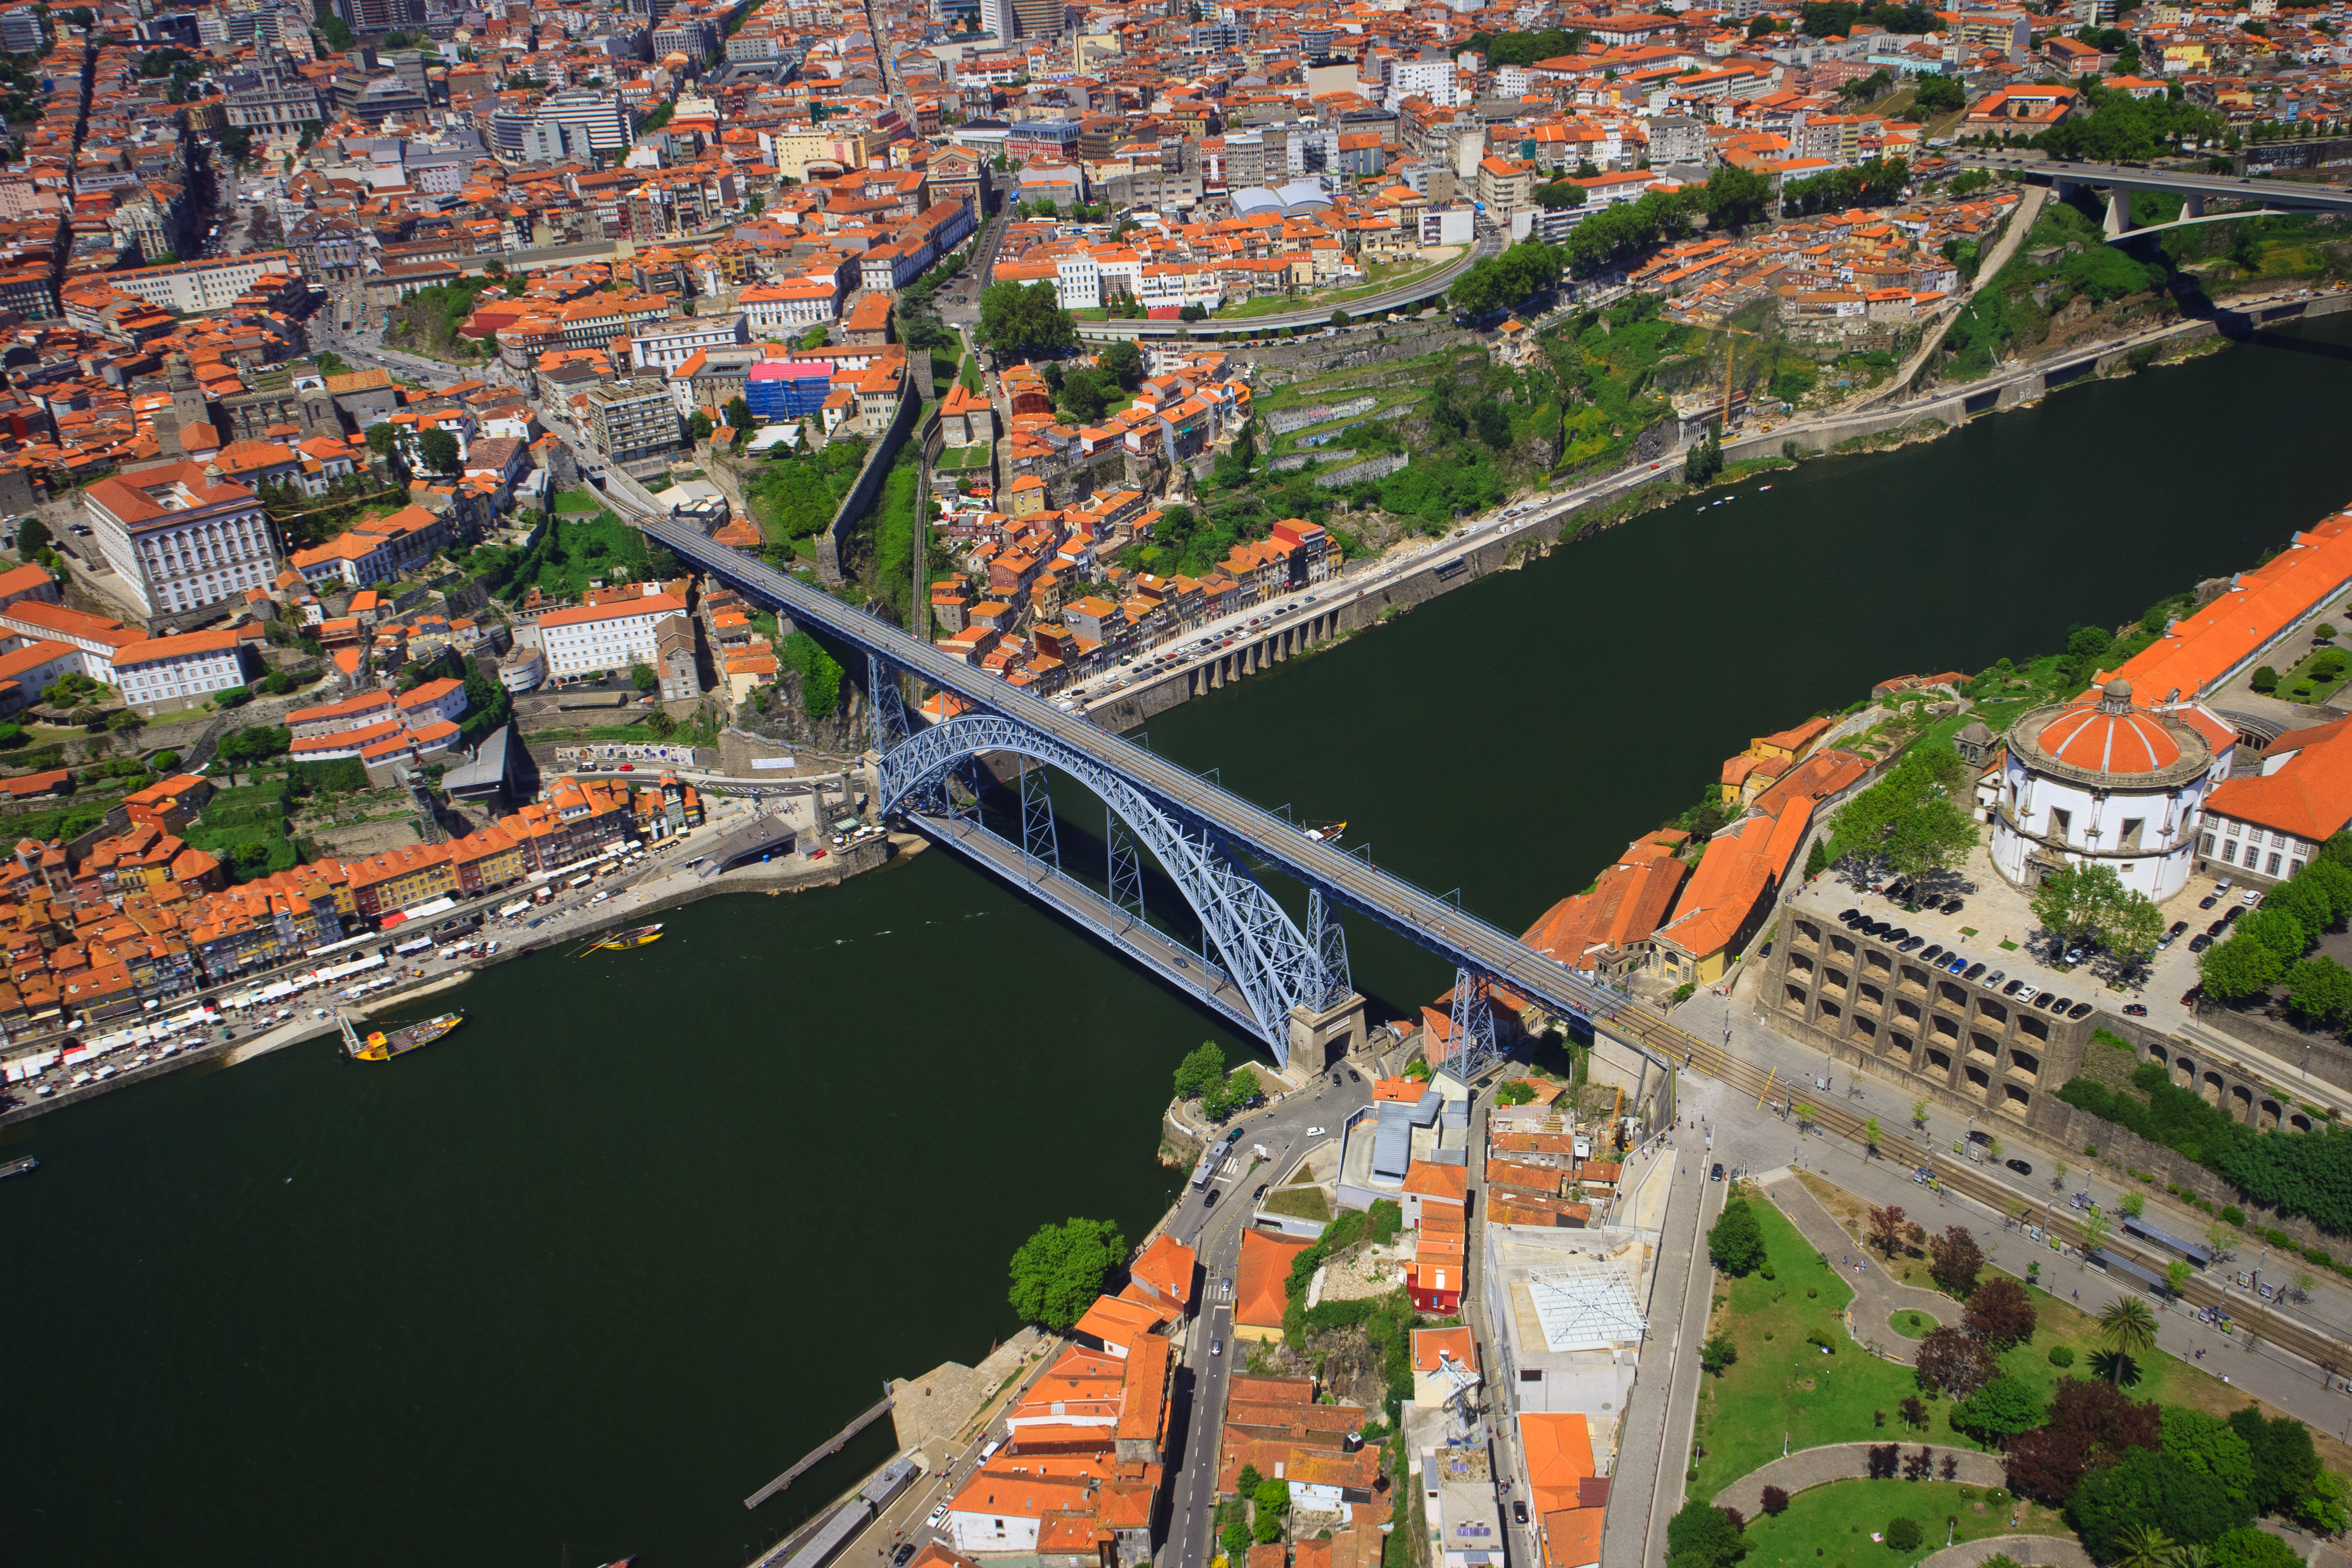 Dom Luís I Bridge Aerial